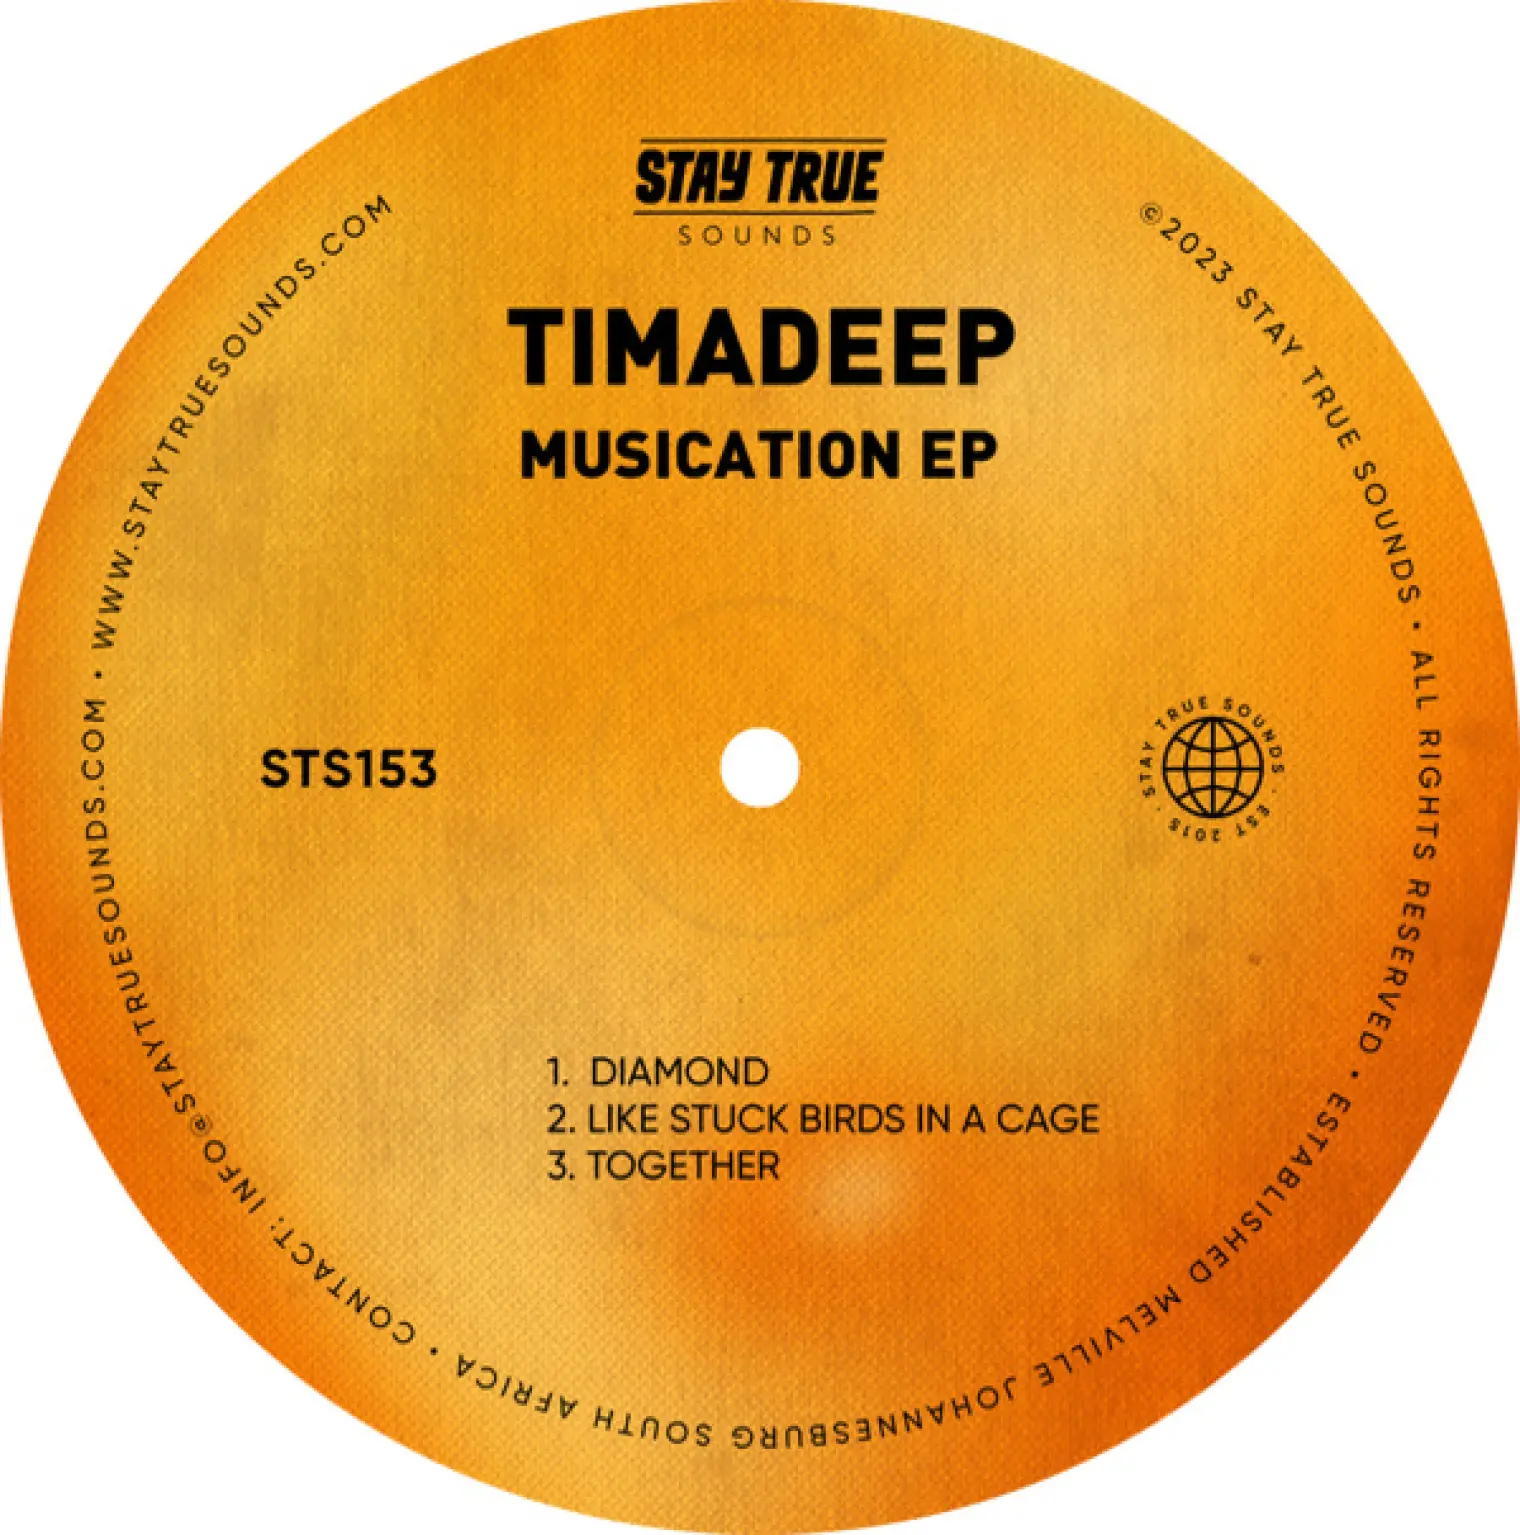 Musication EP -  TimAdeep 